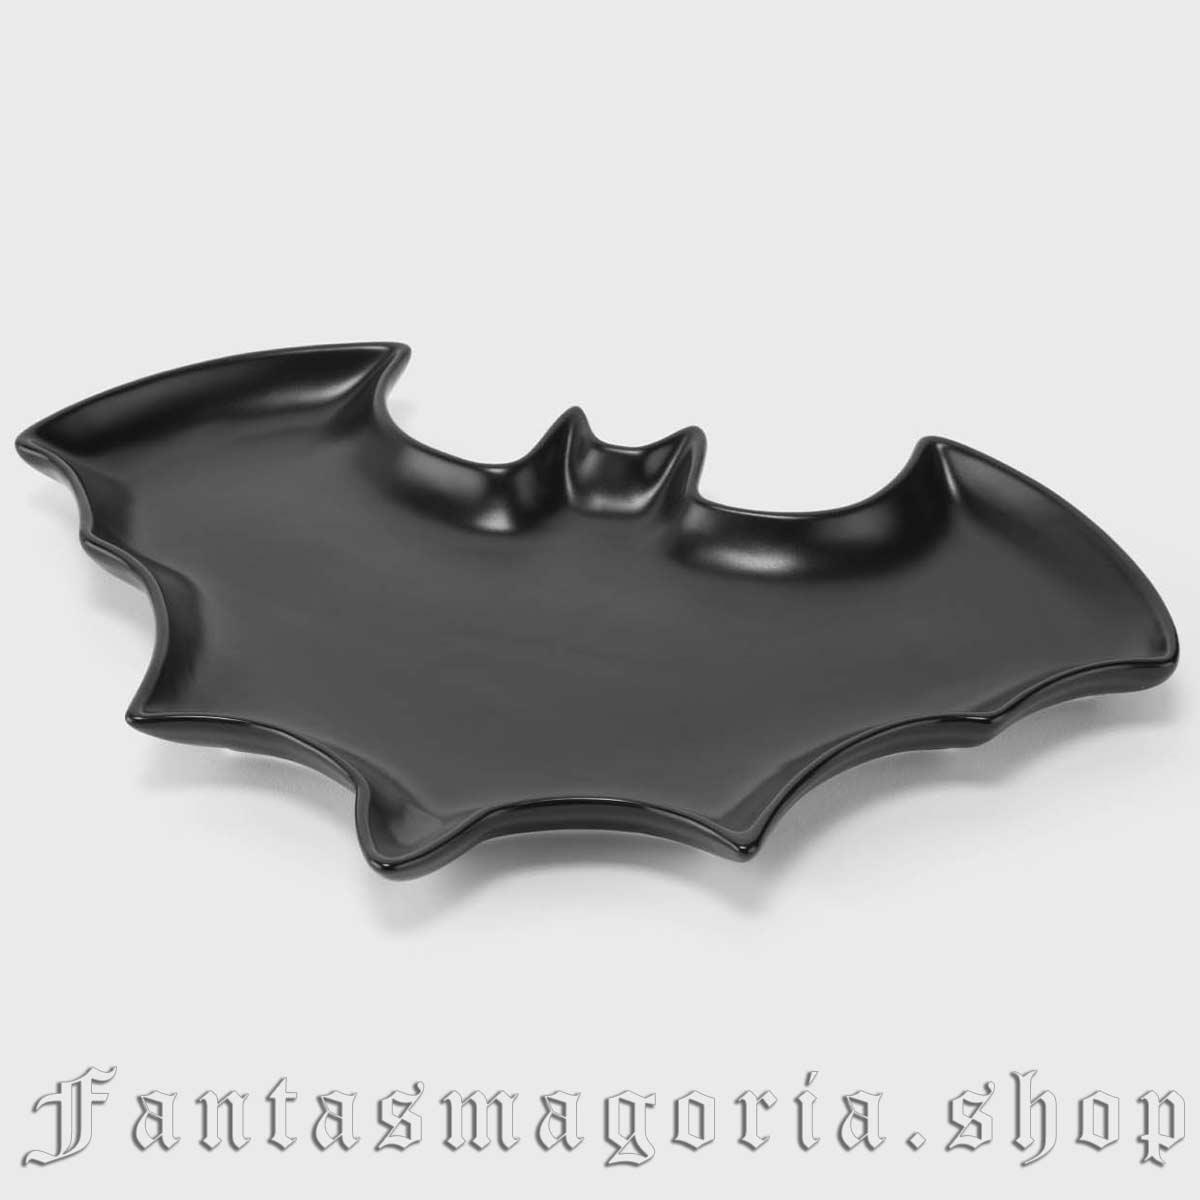 Gothic black bat shapped ceramic plate. Killstar